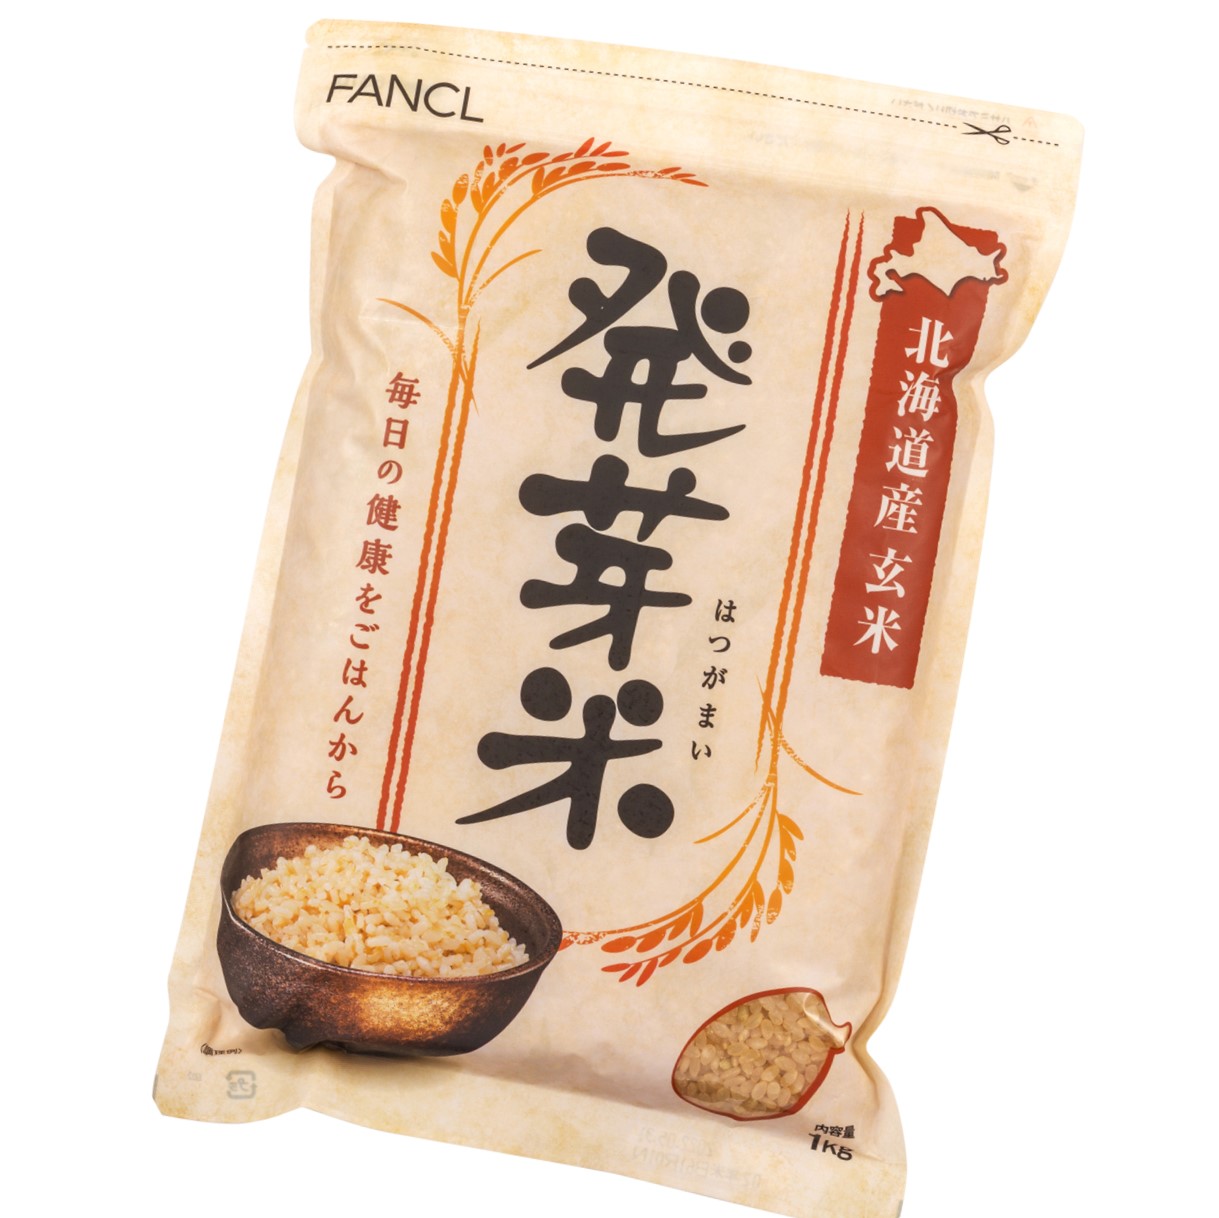 発芽米 金のいぶき 4kg[ FANCL 発芽玄米 玄米 ビタミン カルシウム